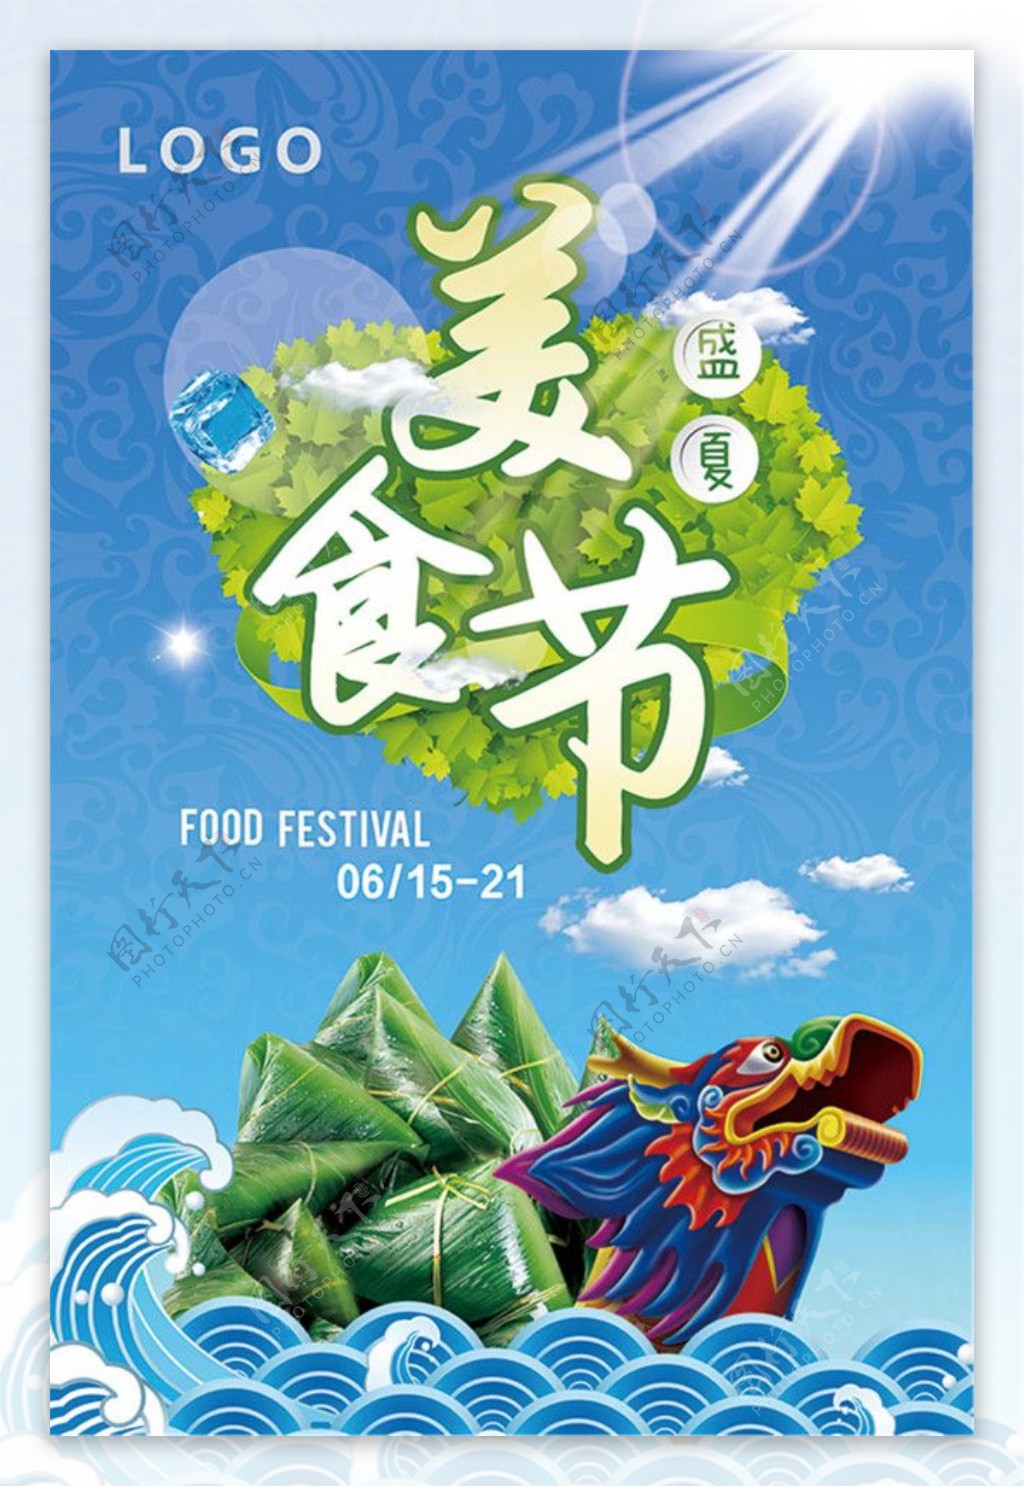 盛夏美食节活动海报设计